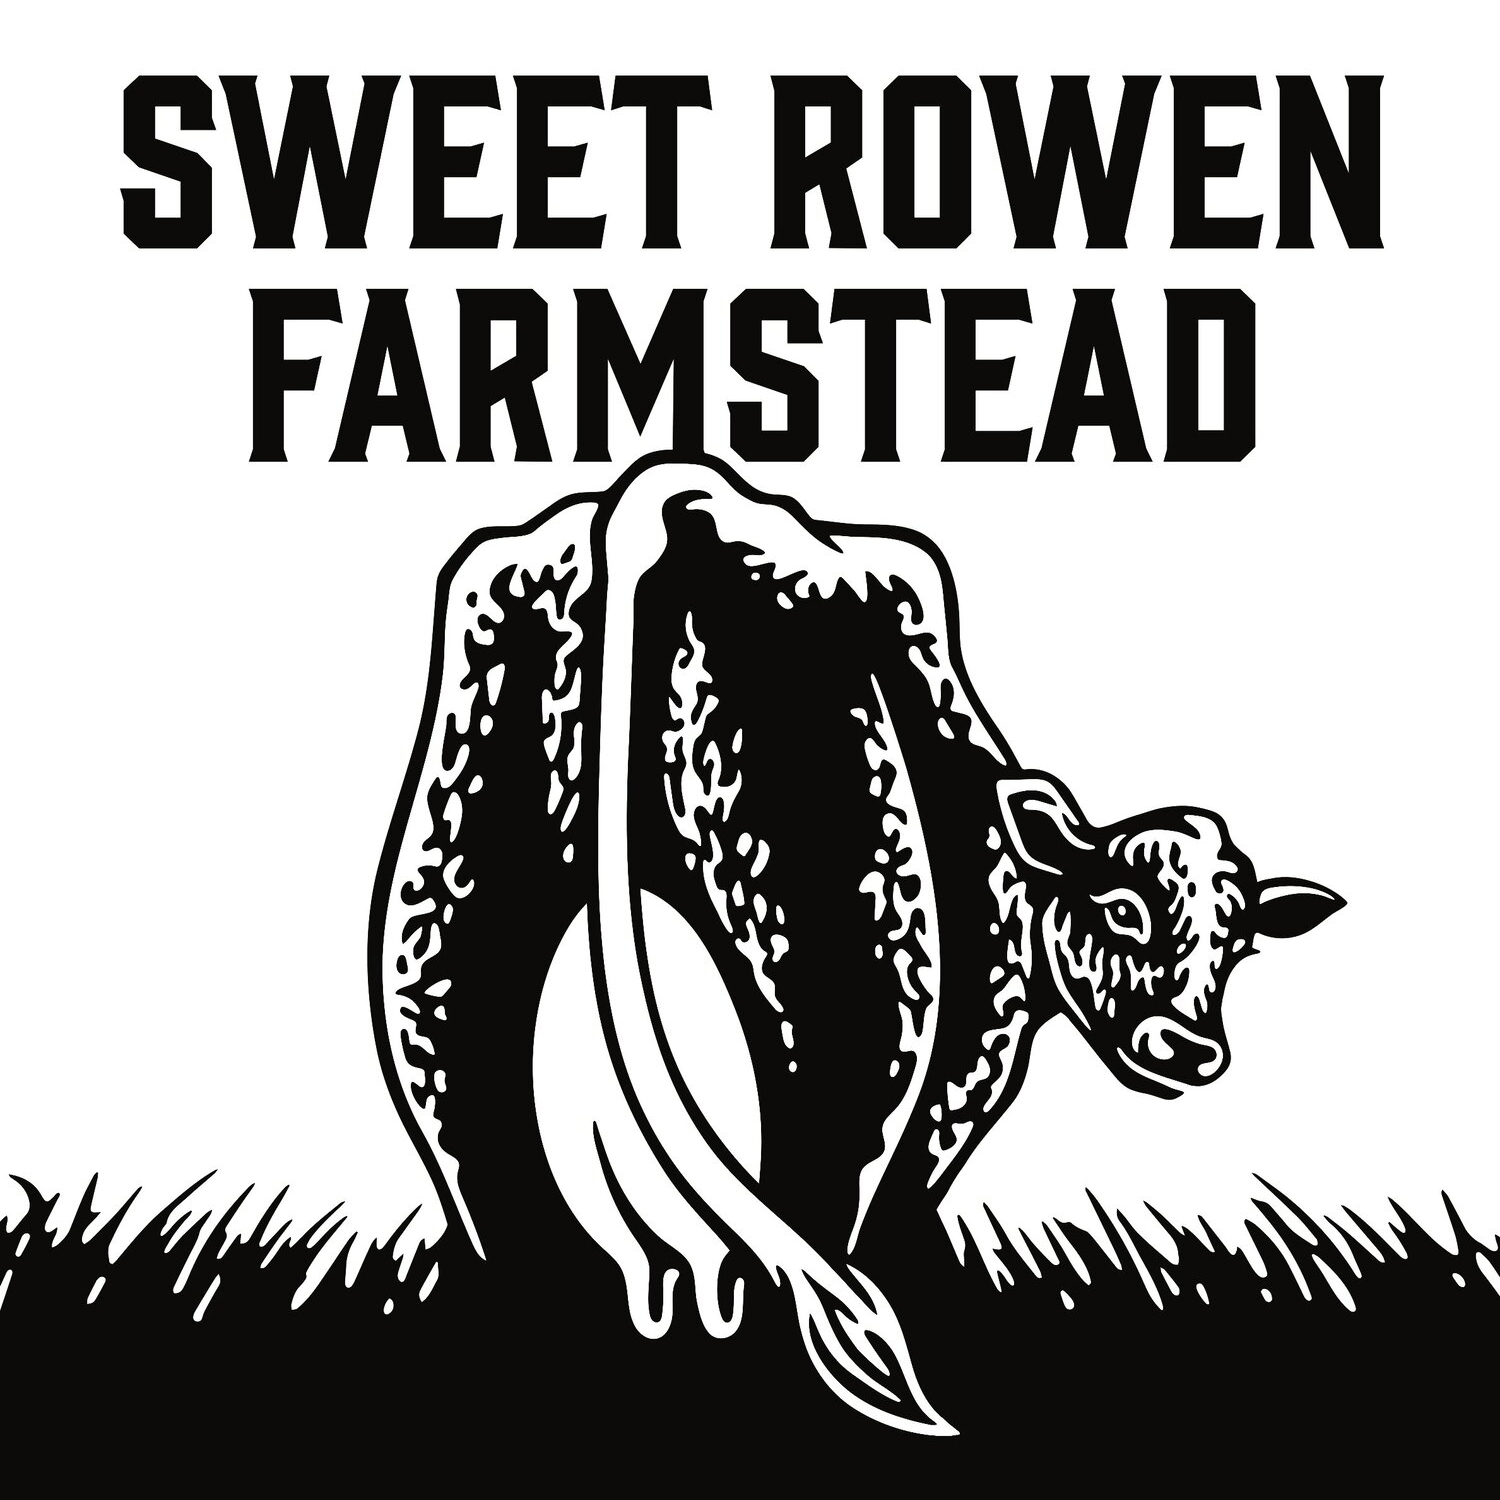 Sweet Rowen Farmstead